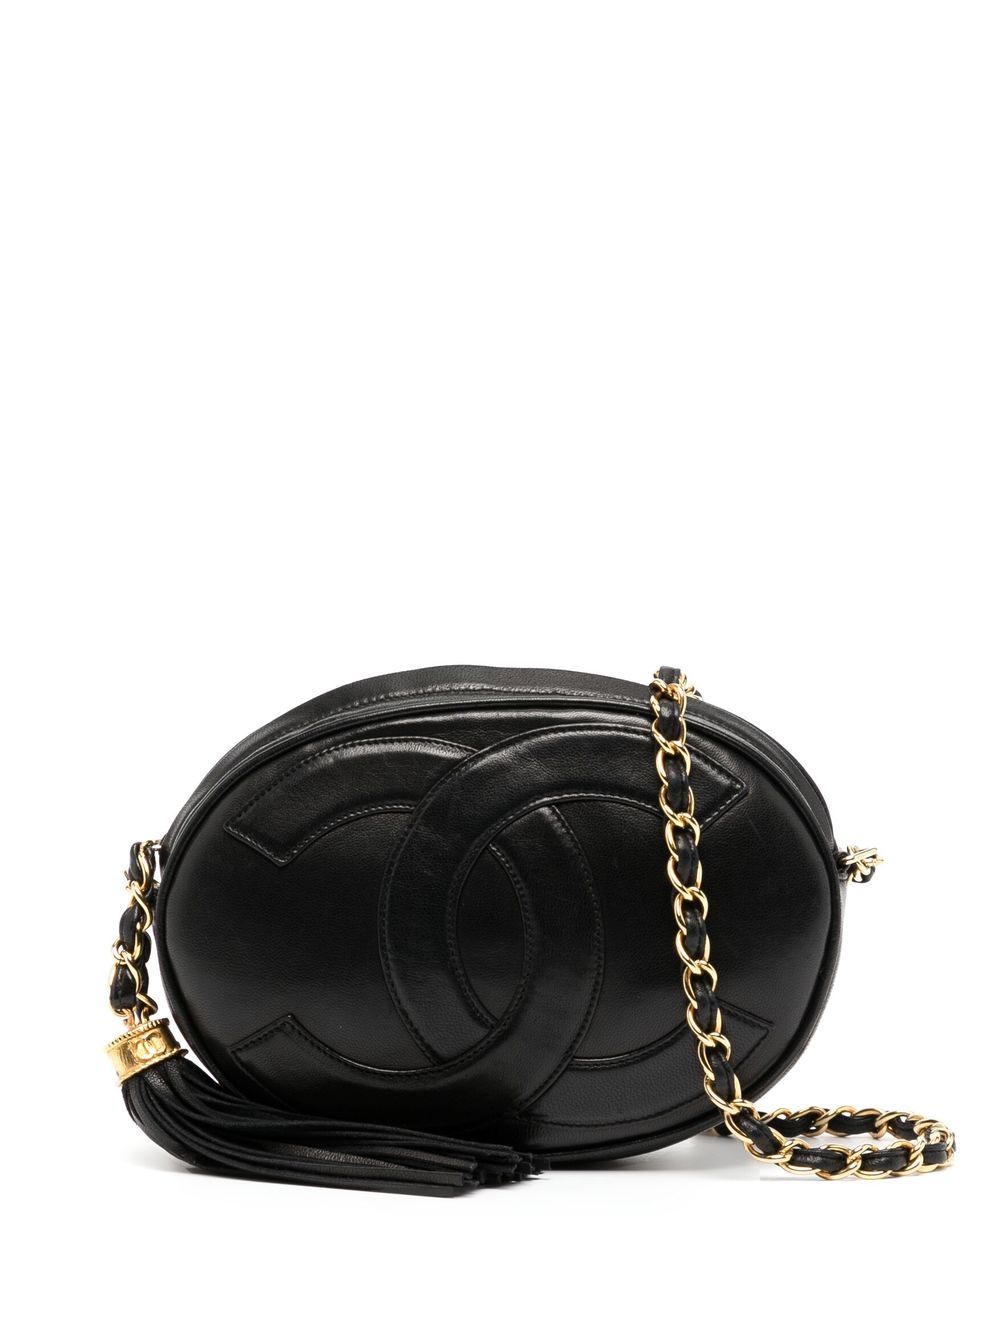 Chanel Vintage Case Bag - 18 For Sale on 1stDibs